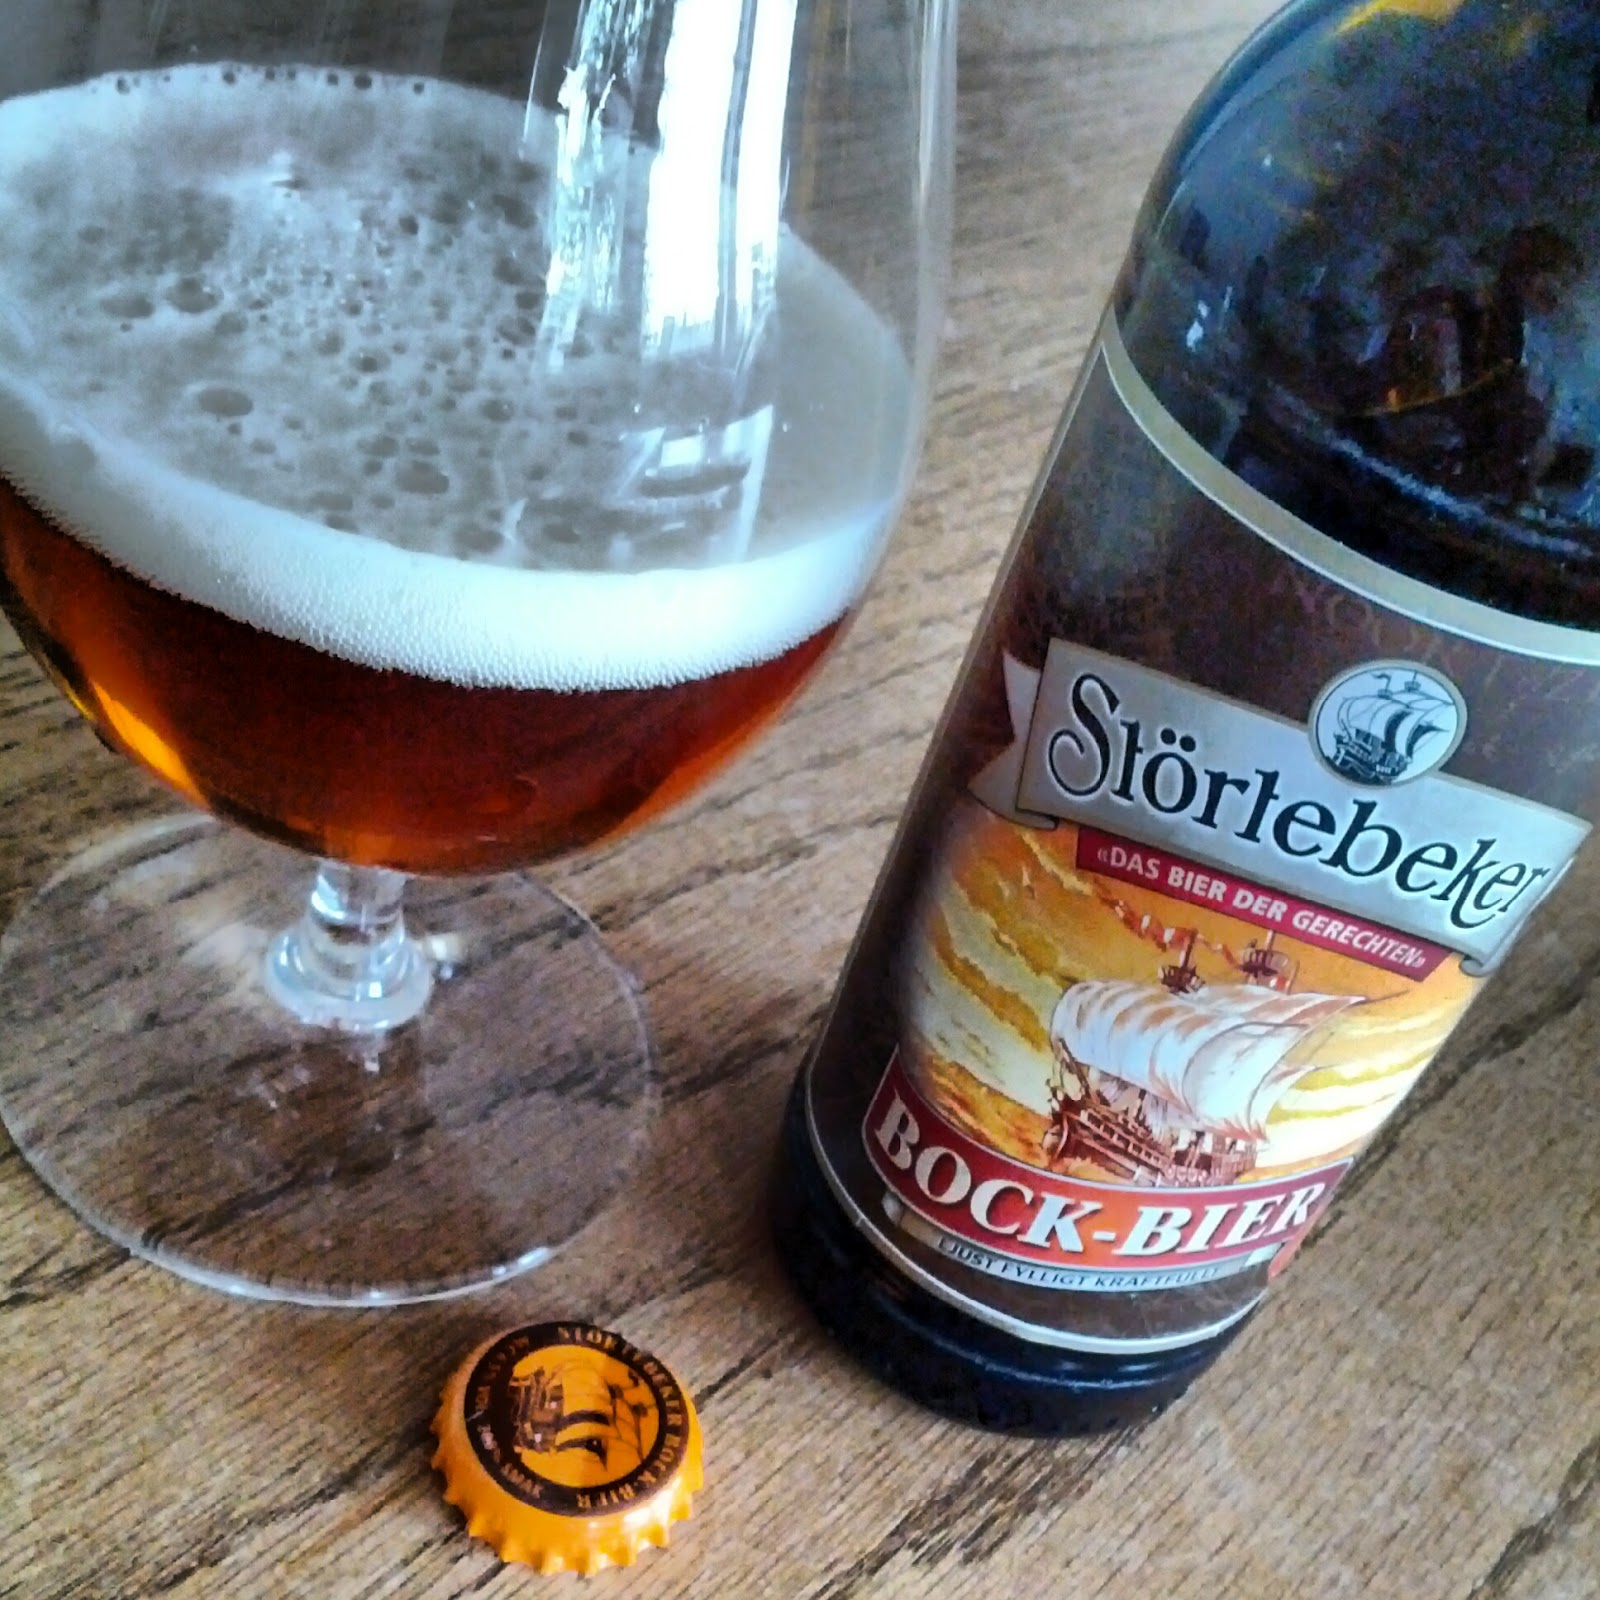 Öl för en lekman: Störtebeker Bock-Bier